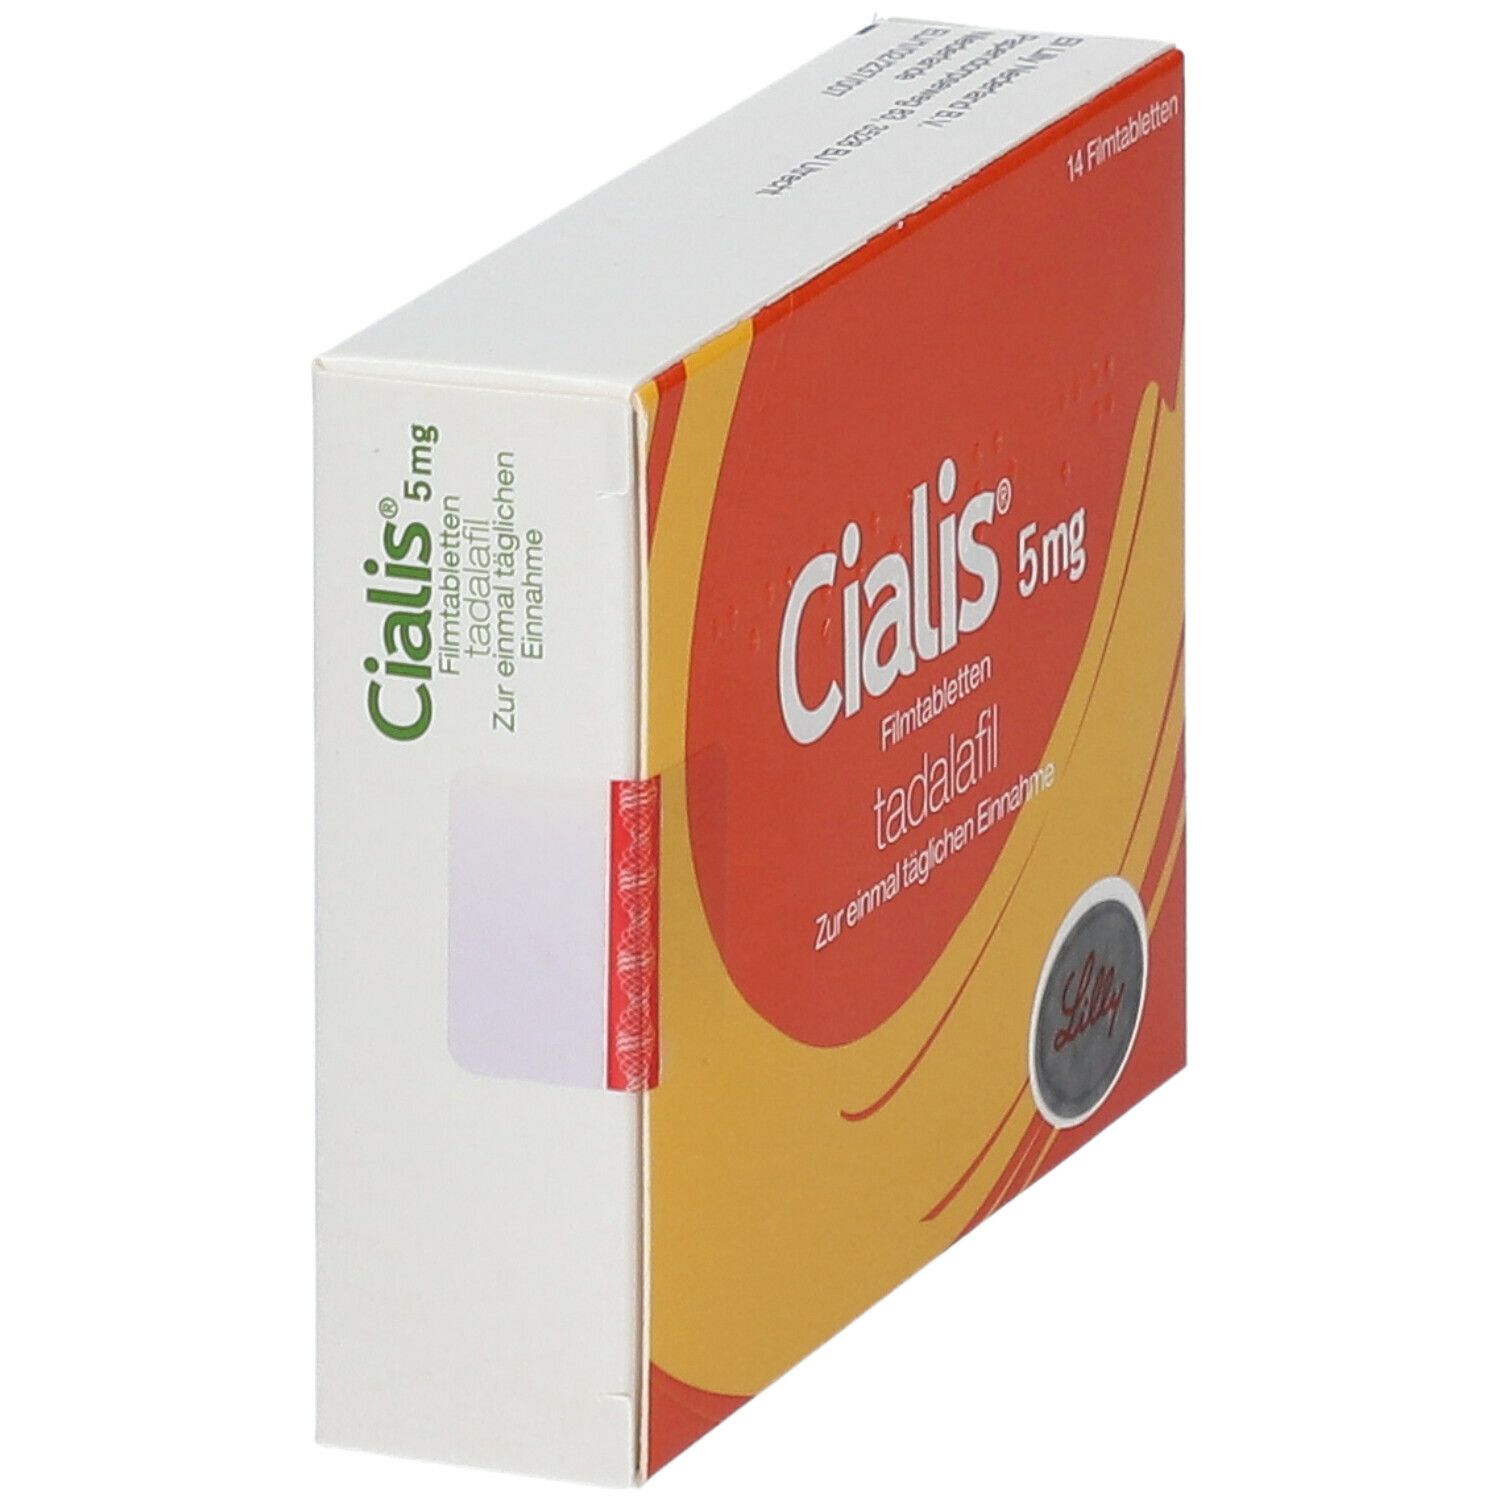 Cialis® 5 mg